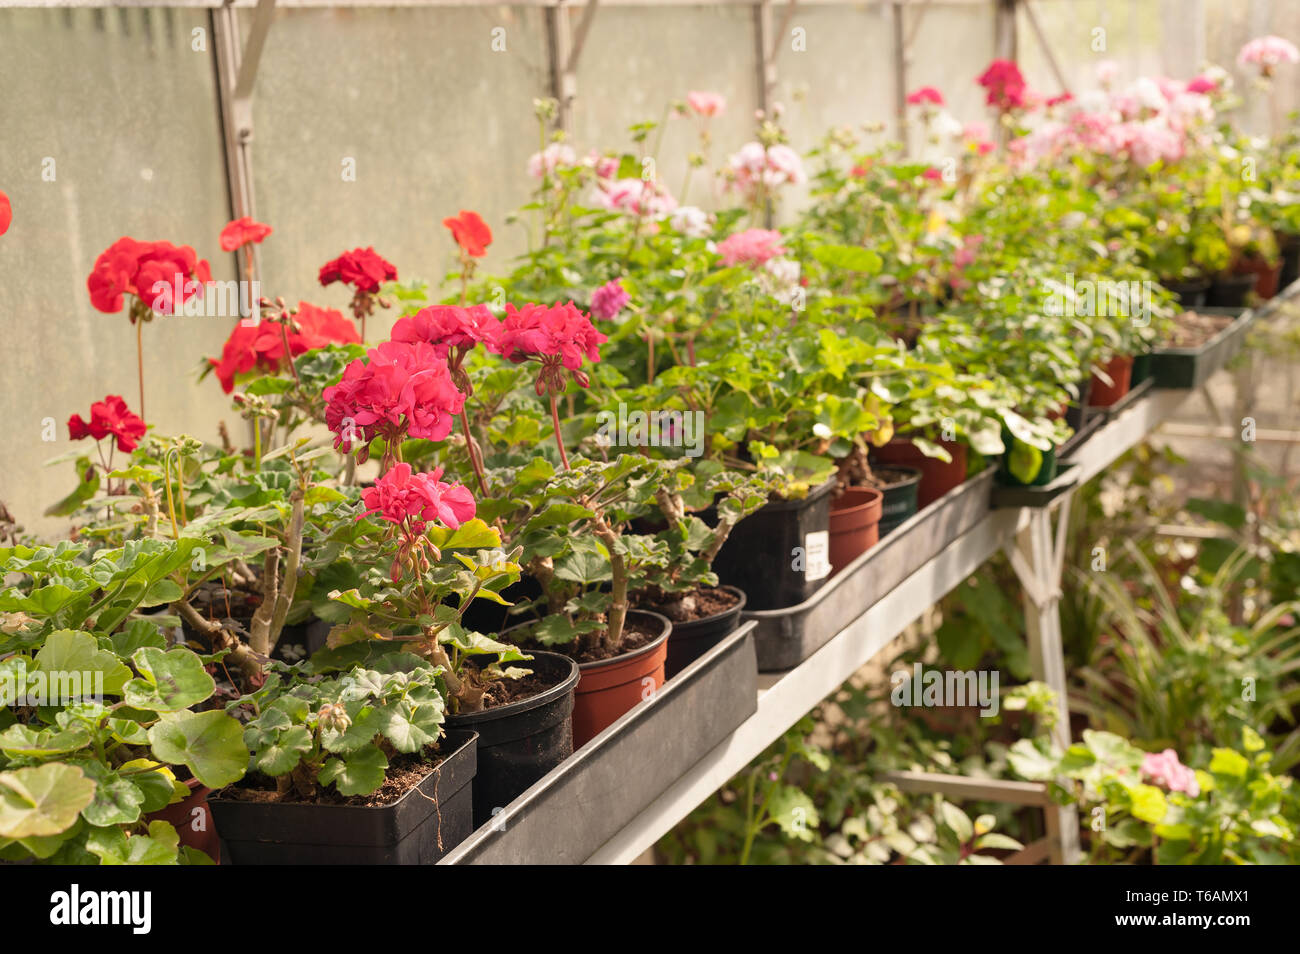 Serre chauffée forçant jardiniers récolte de fleurs, plantes d'être prêt pour le début de l'émission et la plantation dans le jardin en avril où la menace de frost Banque D'Images